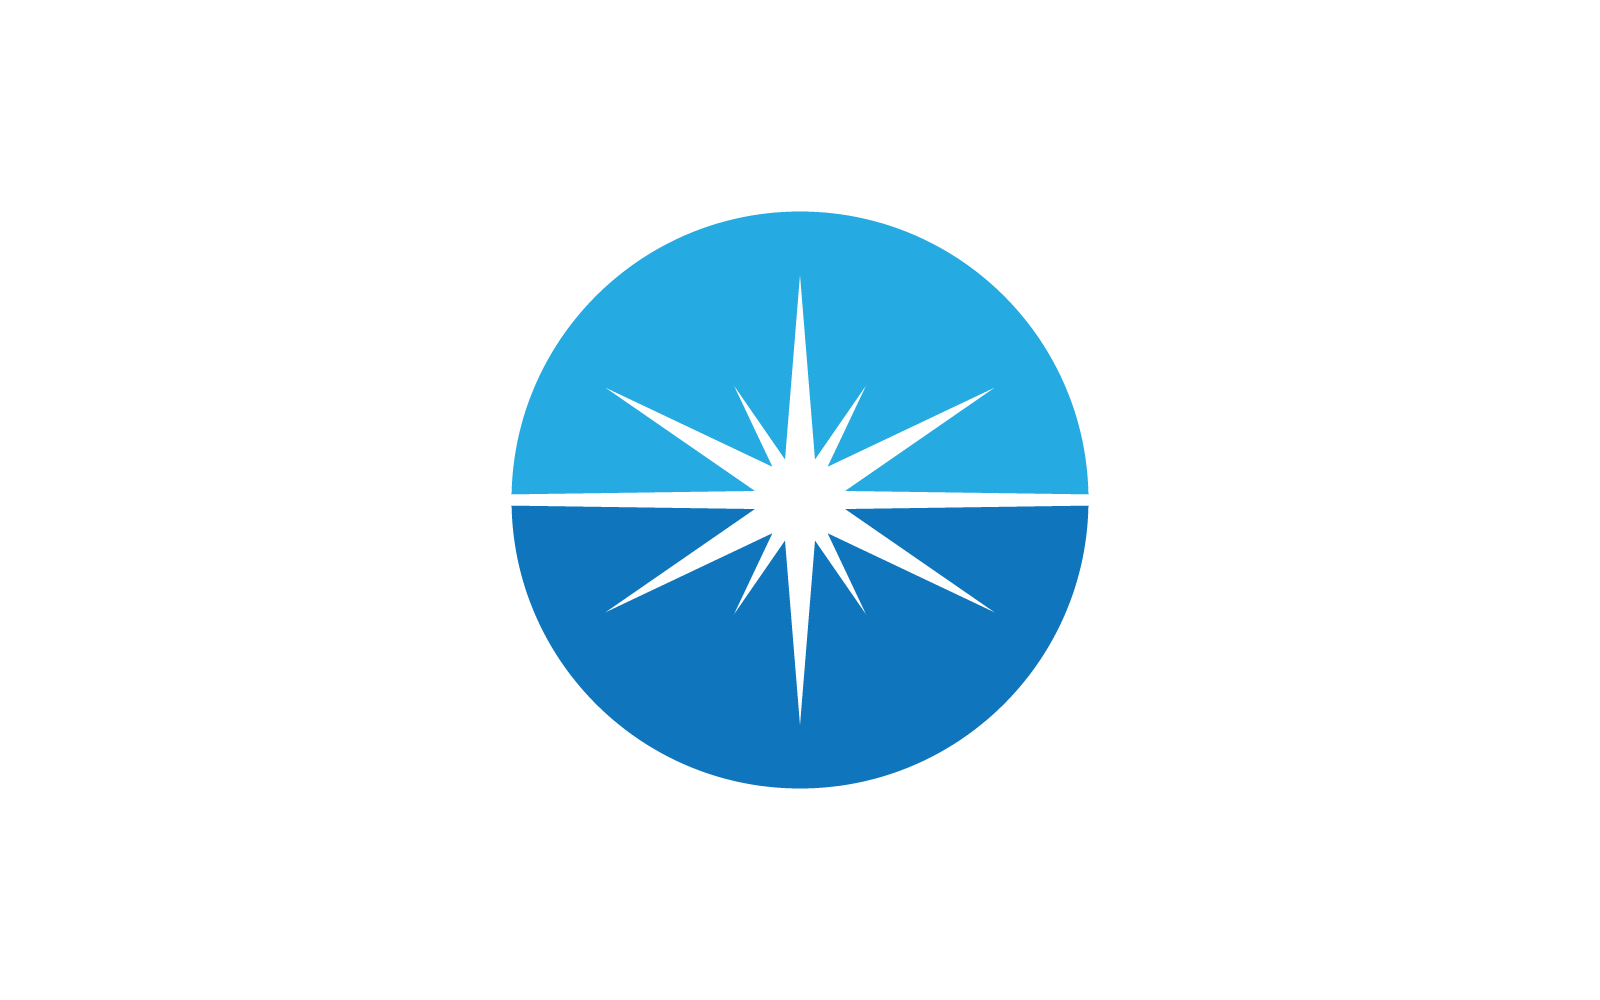 Звездный логотип иллюстрации векторной плоской конструкции